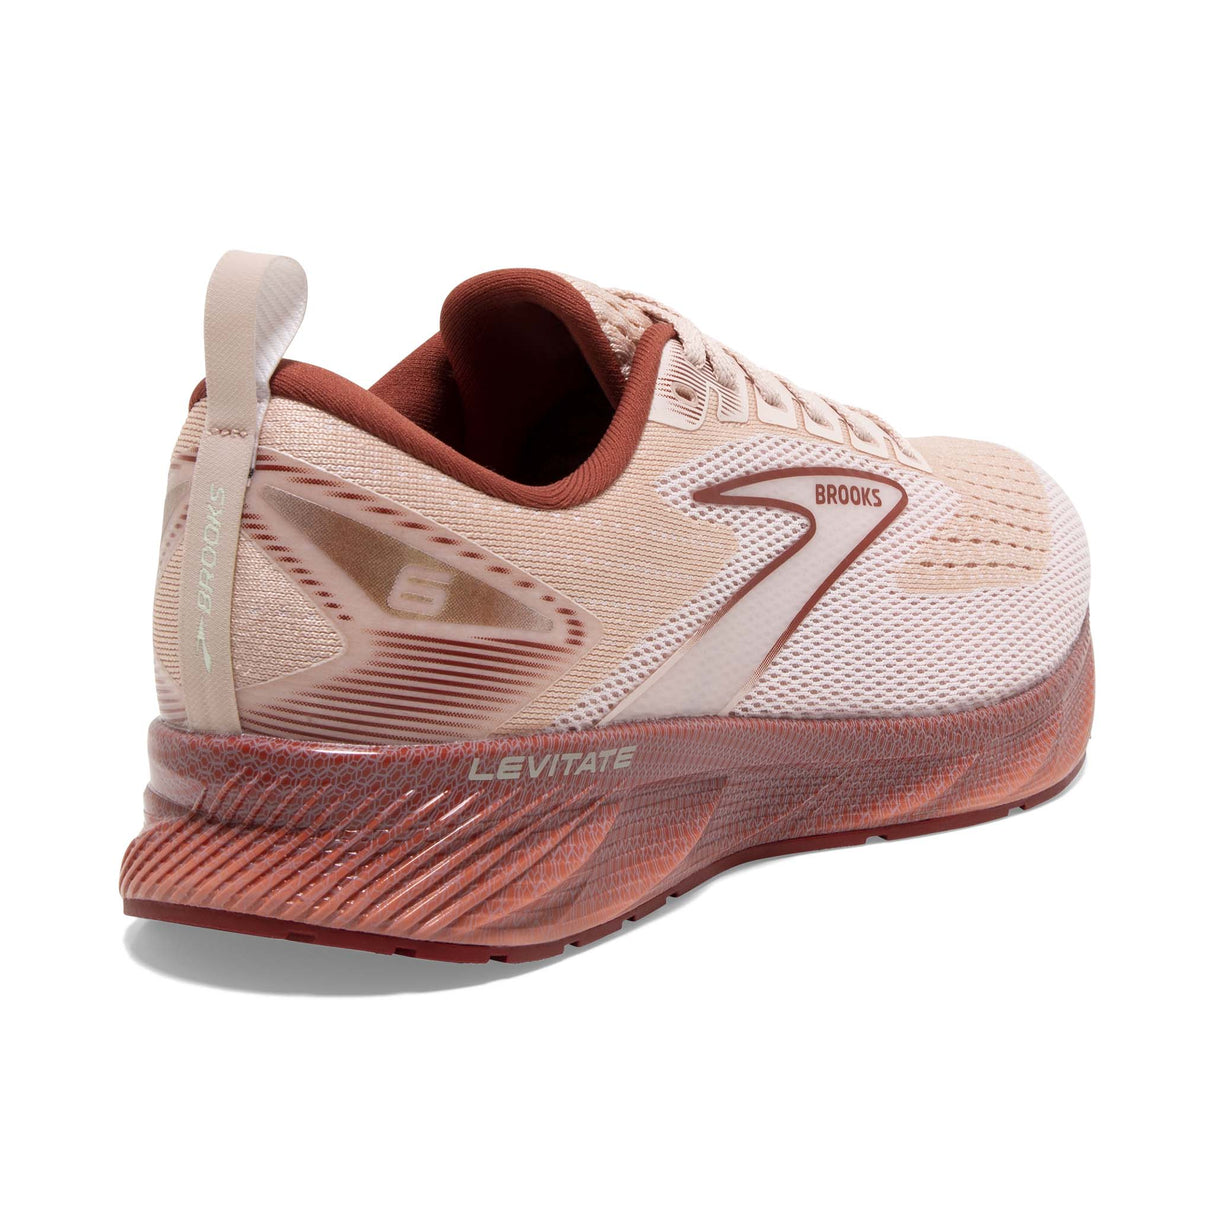 Brooks Levitate 6 souliers de course femme talon - Peach Whip / Pink